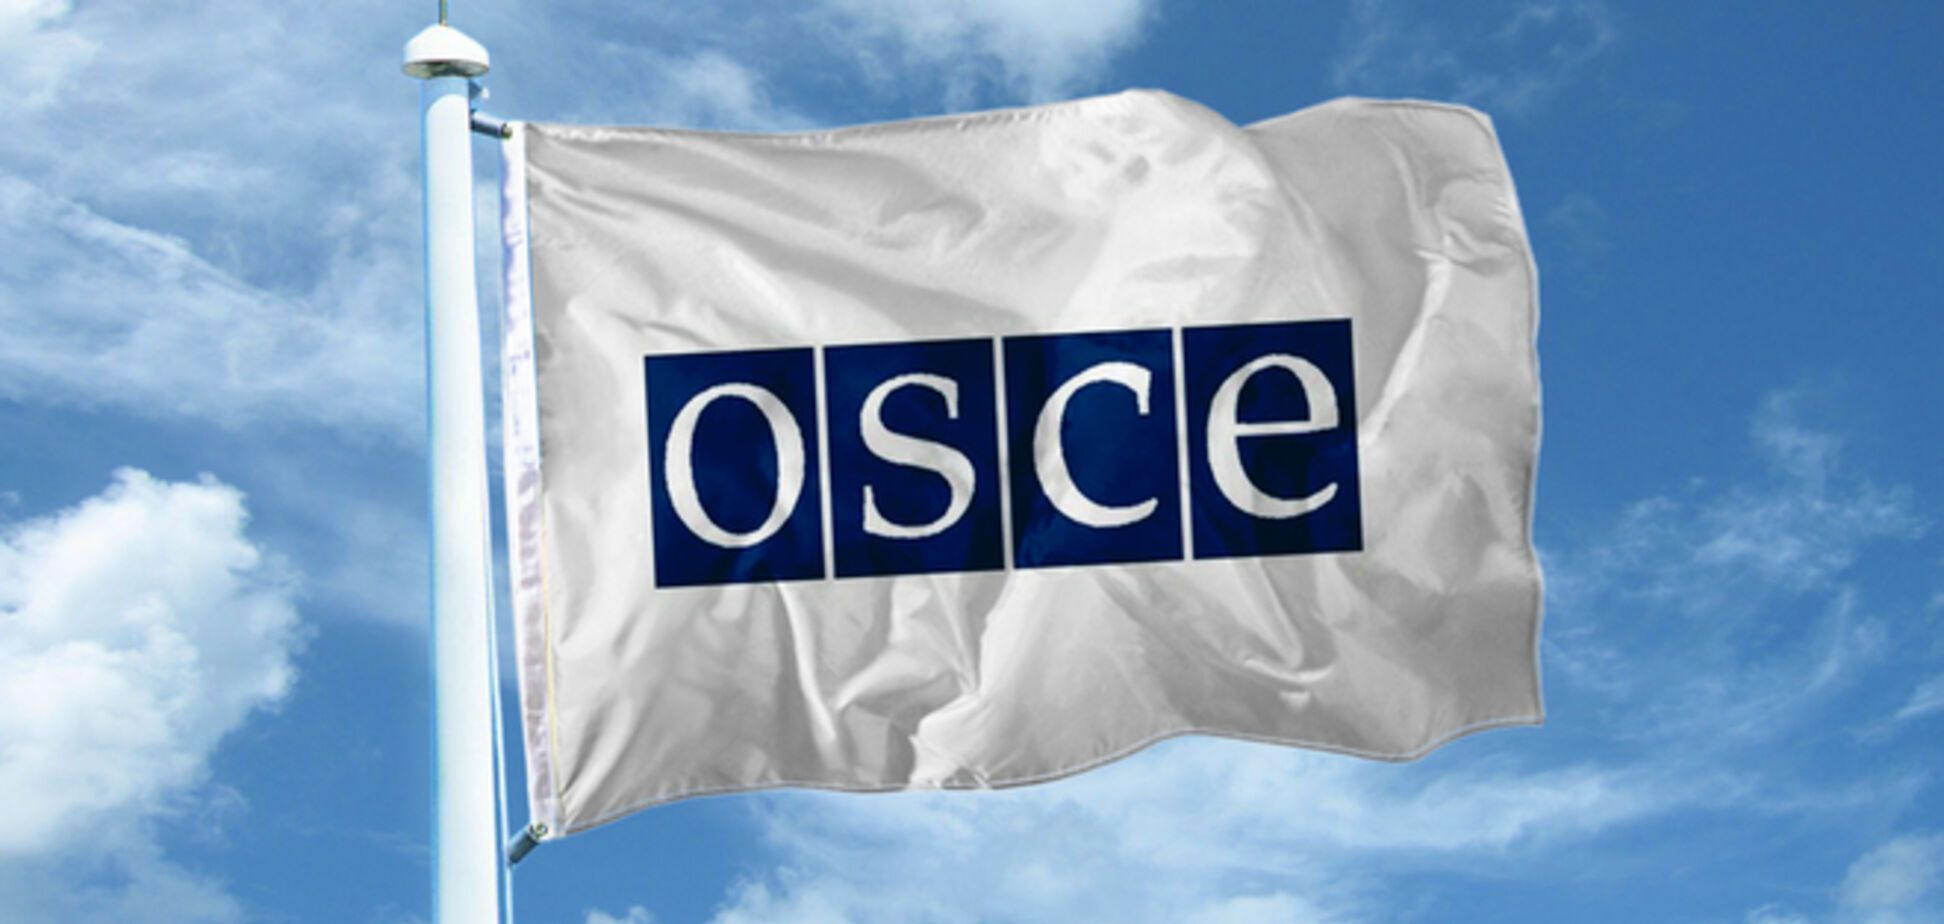 ОБСЄ може відкликати своїх спостерігачів з України - ЗМІ